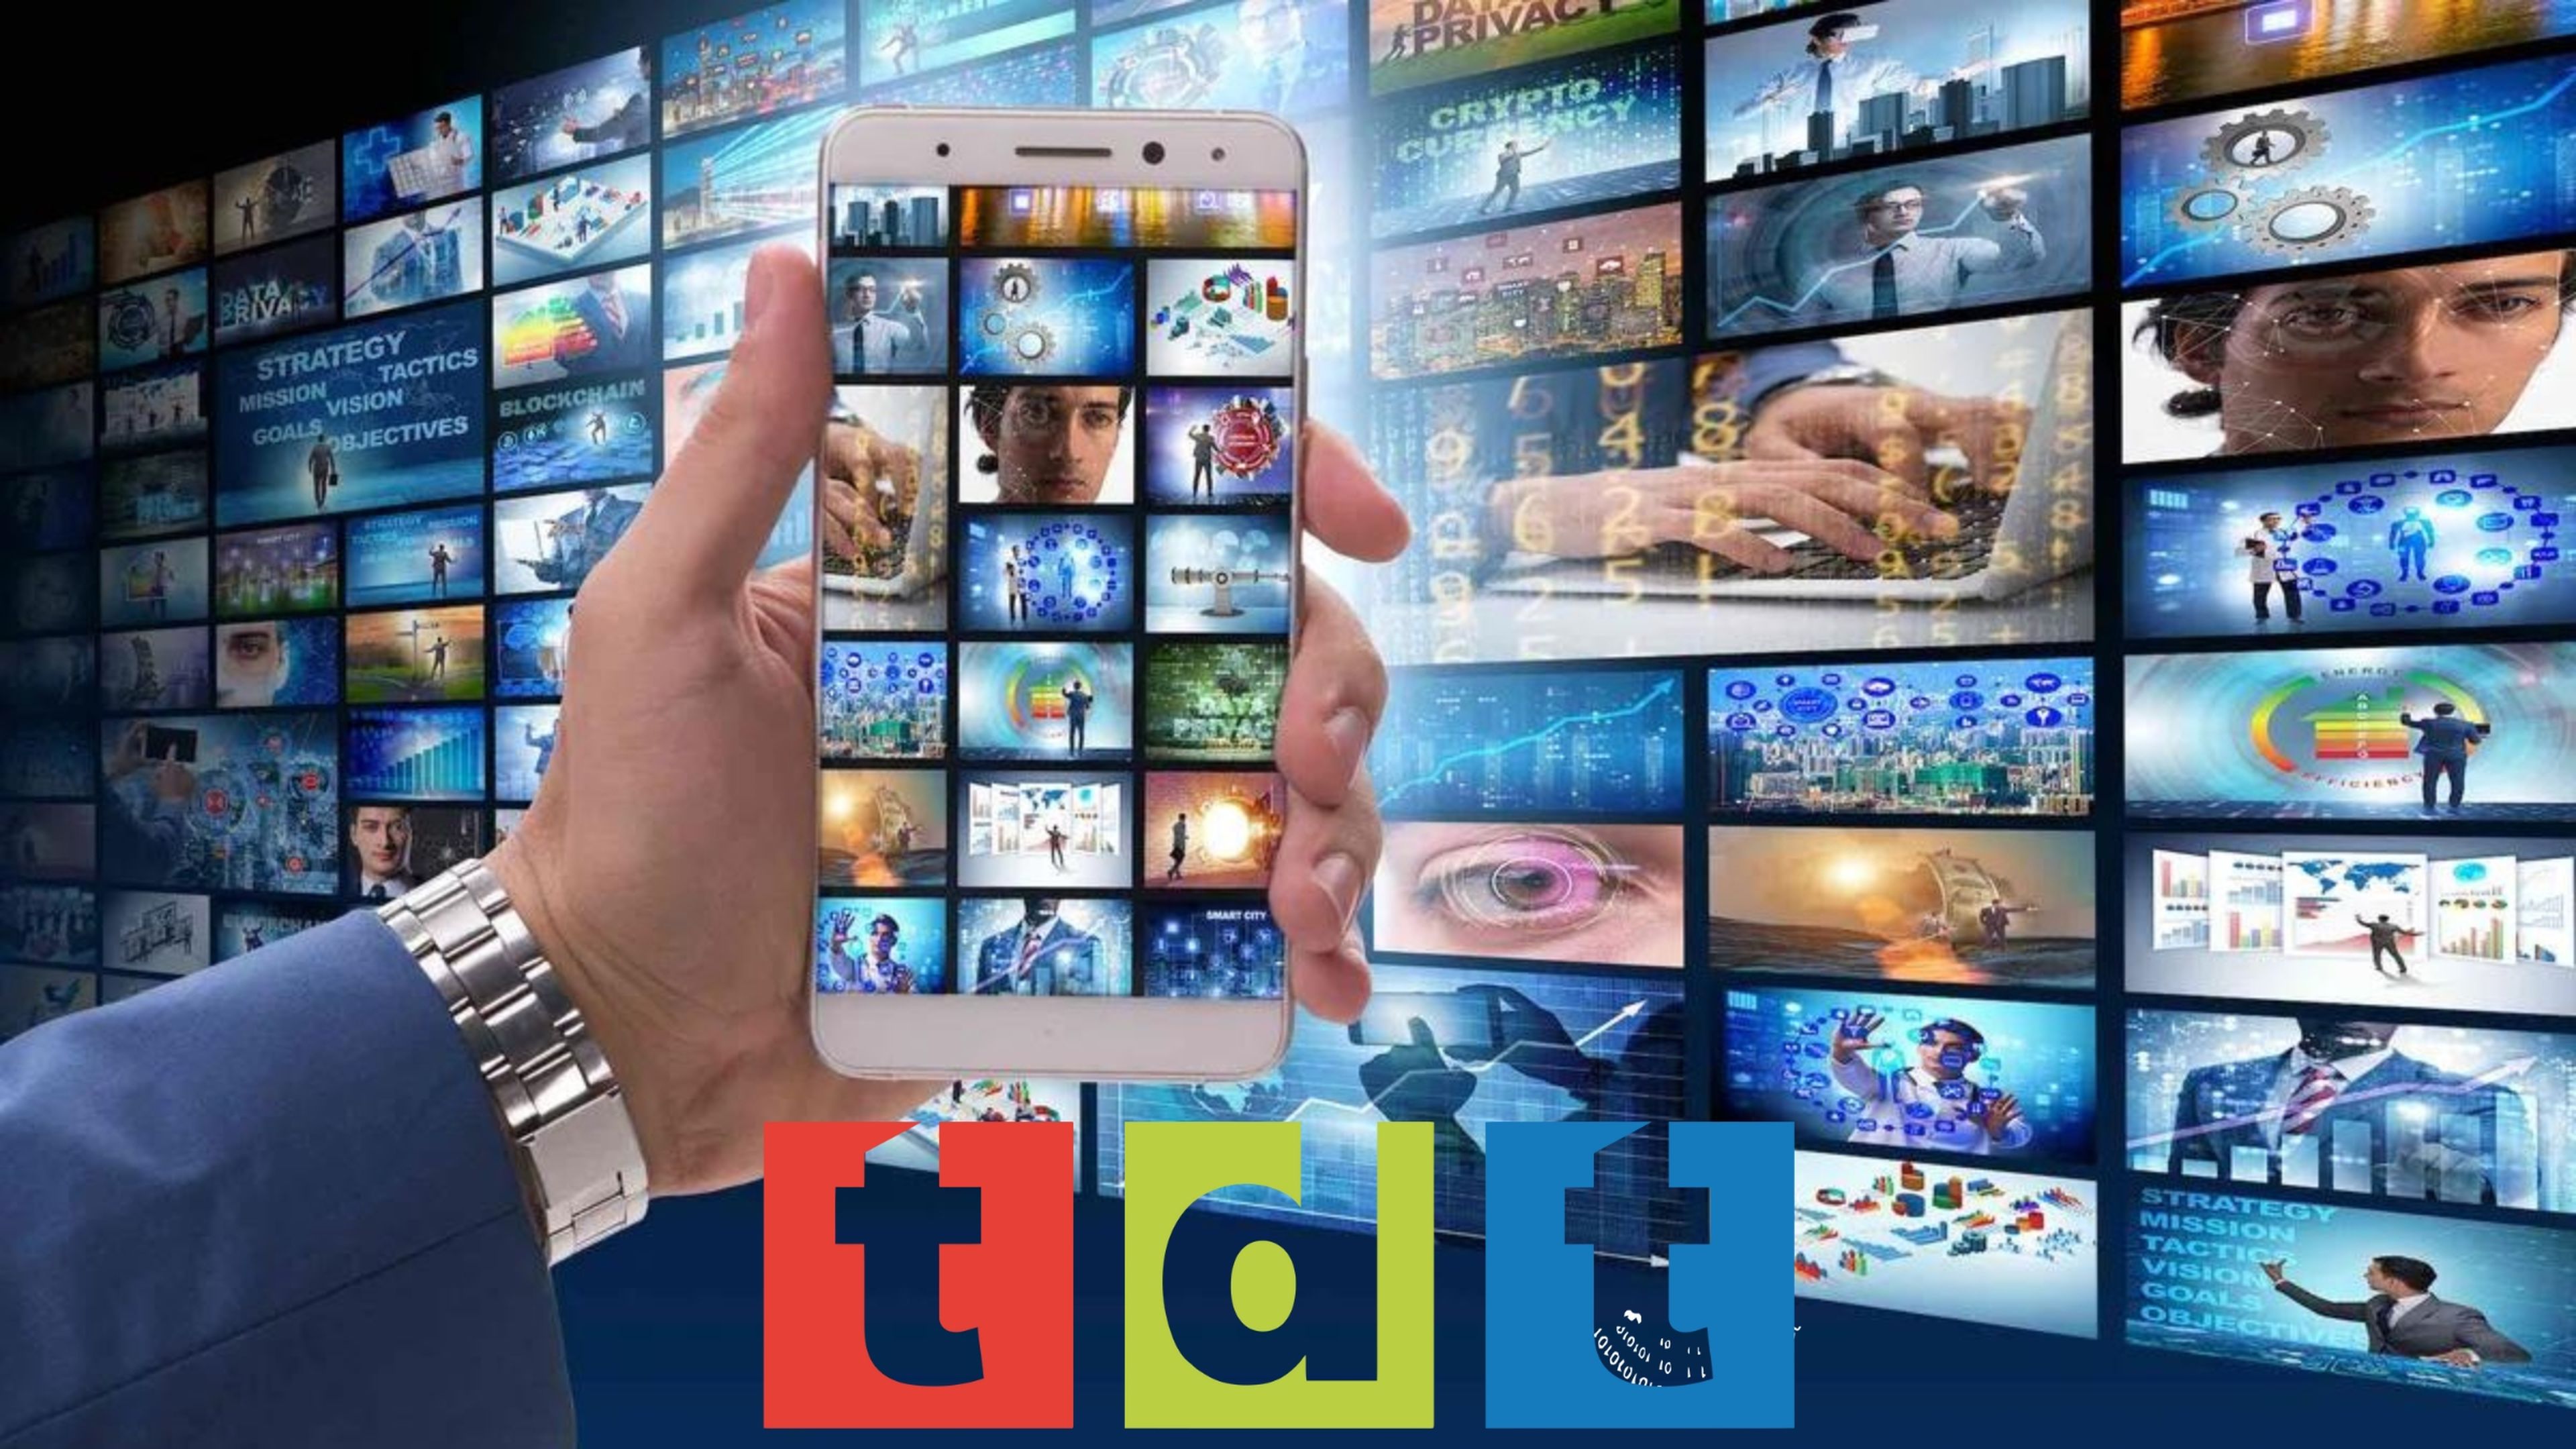 La lista IPTV para ver canales de TDT HD en abierto de todo el mundo